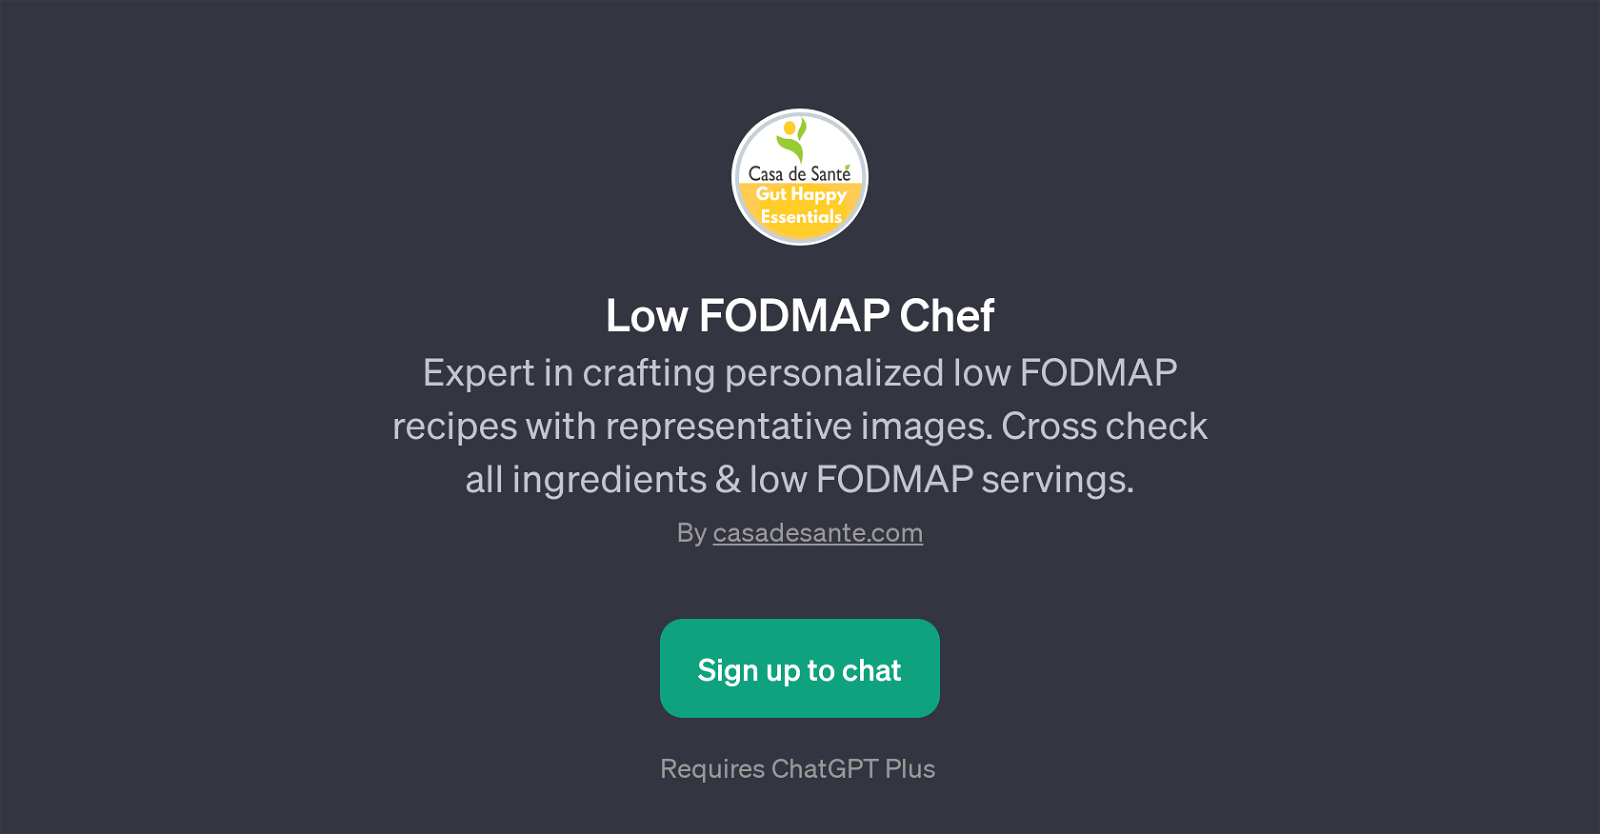 Low FODMAP Chef website